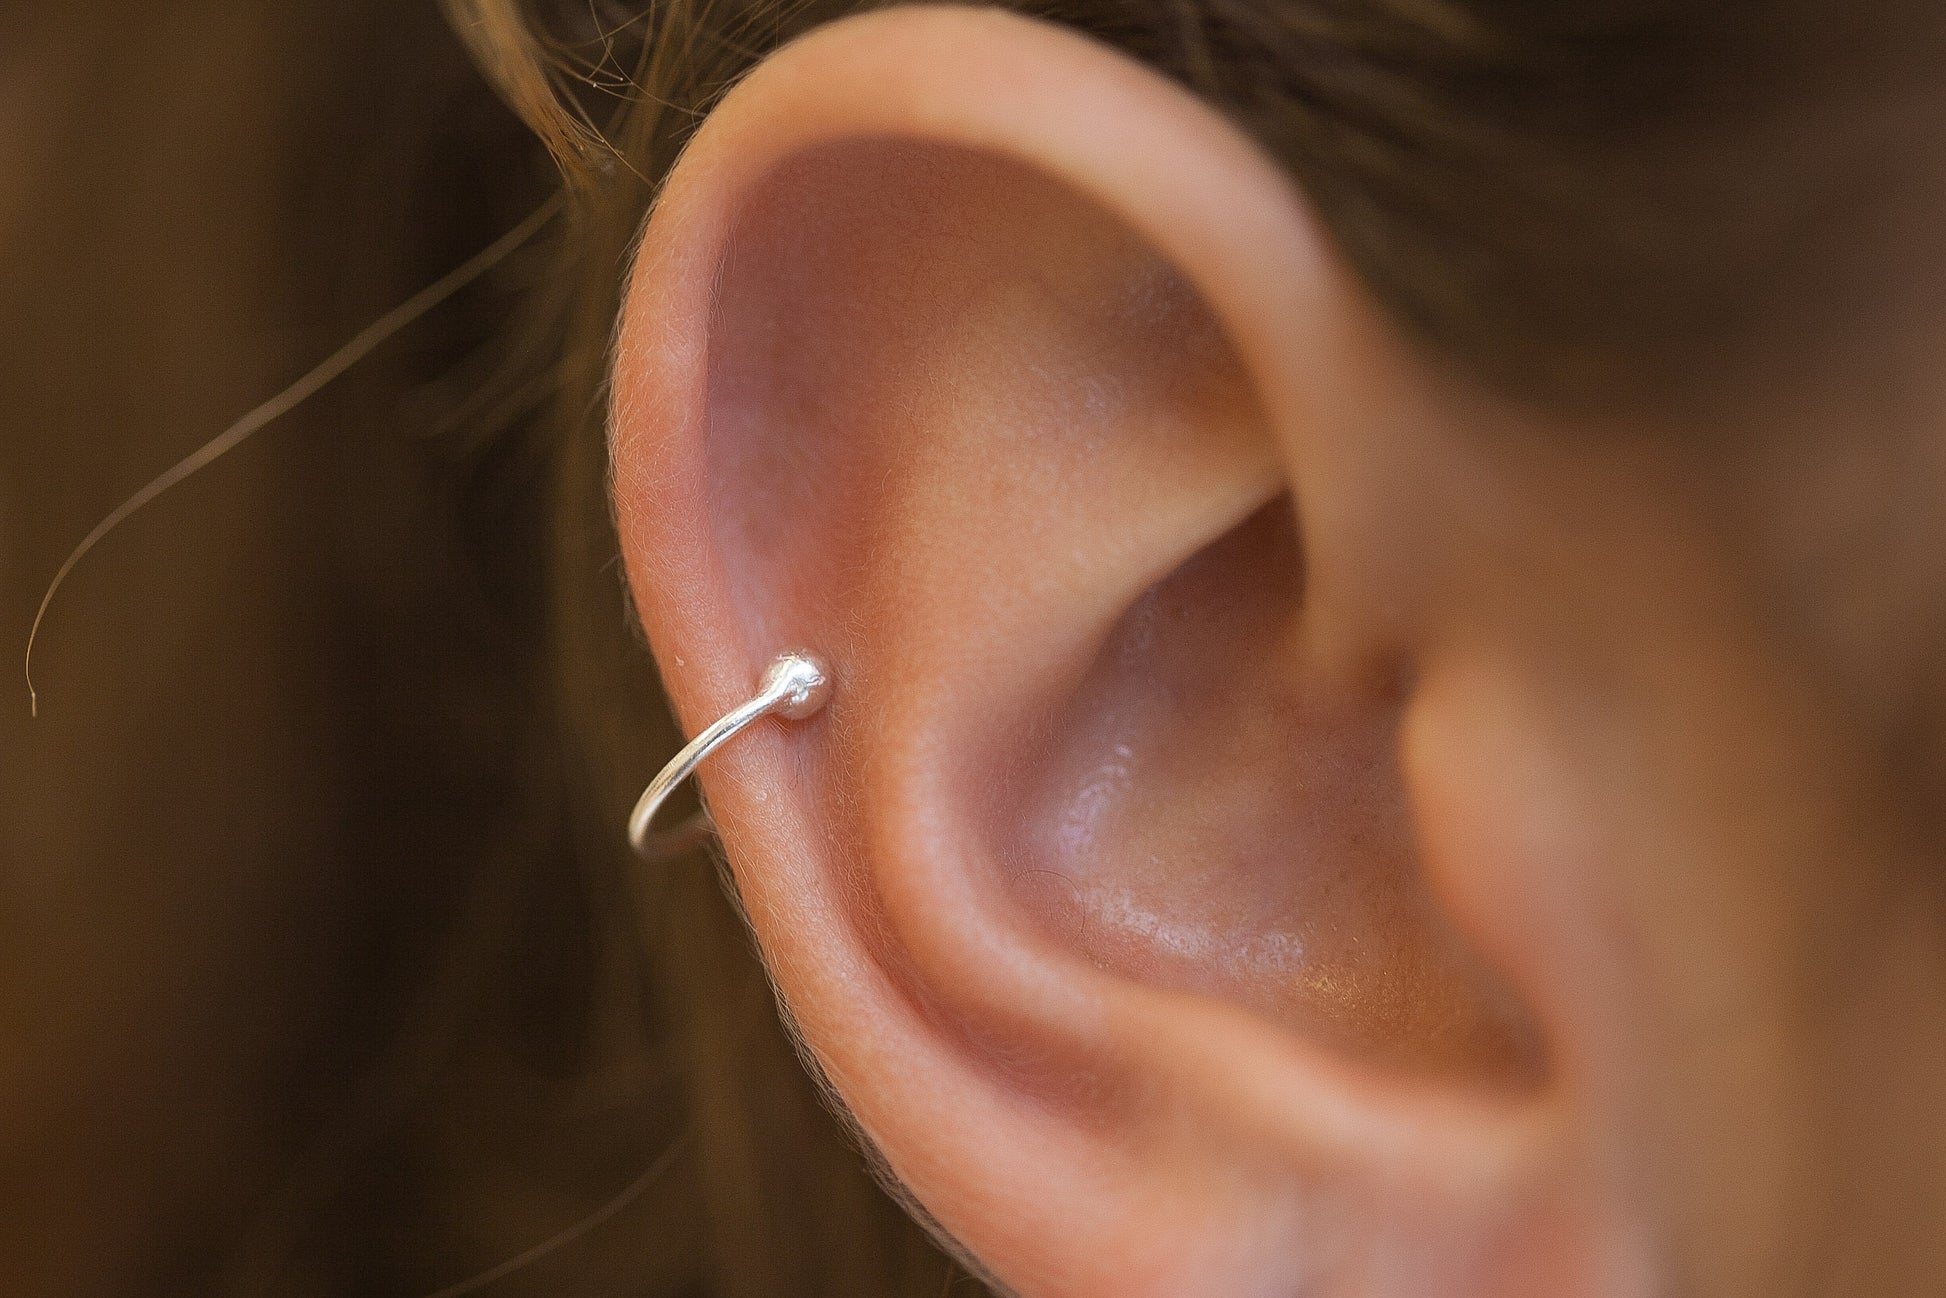 Bague d'oreille Ear cuff en argent, faux piercing